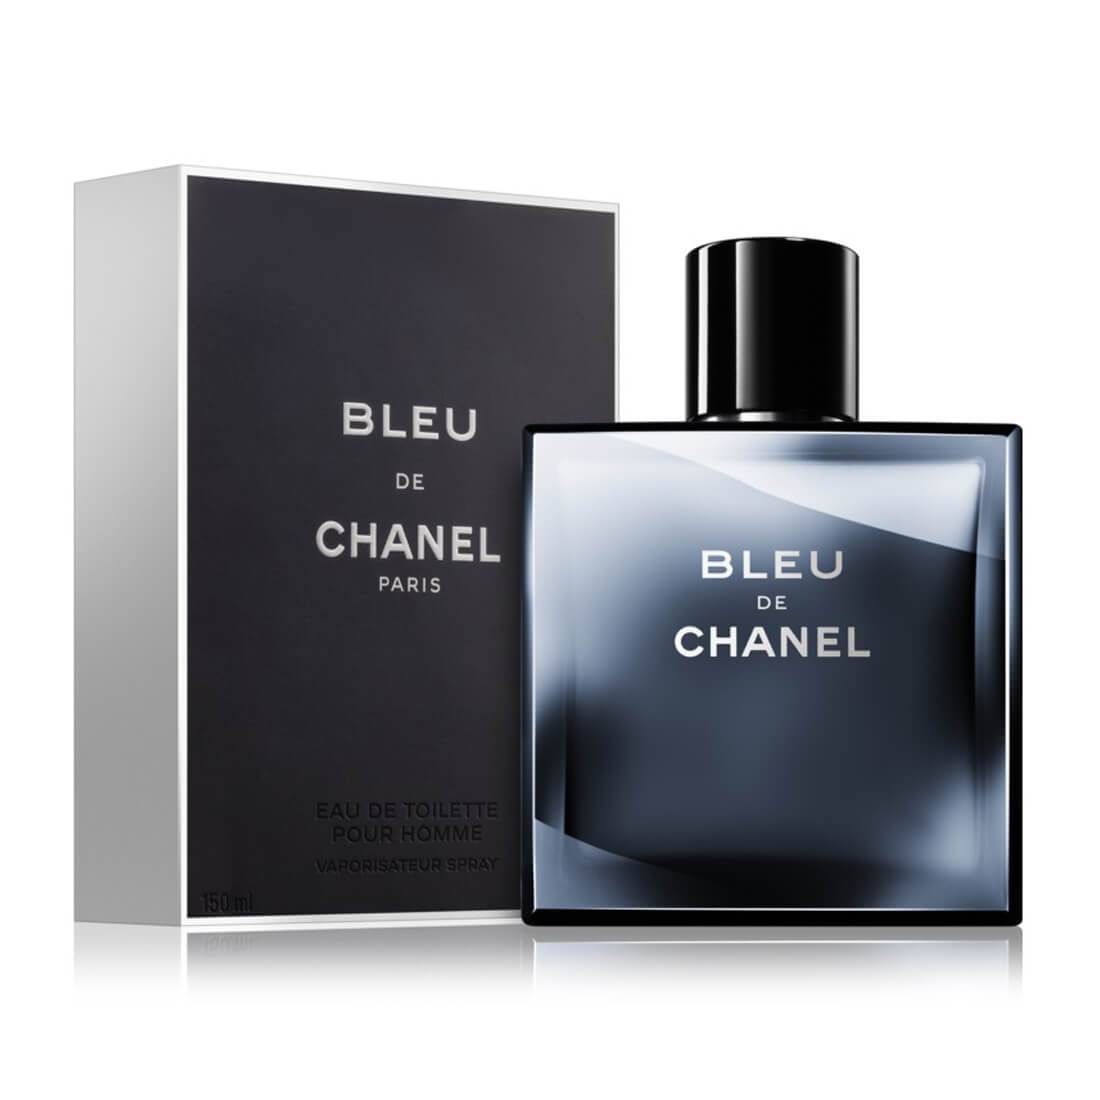 Chanel bleu black friday｜TikTok Search